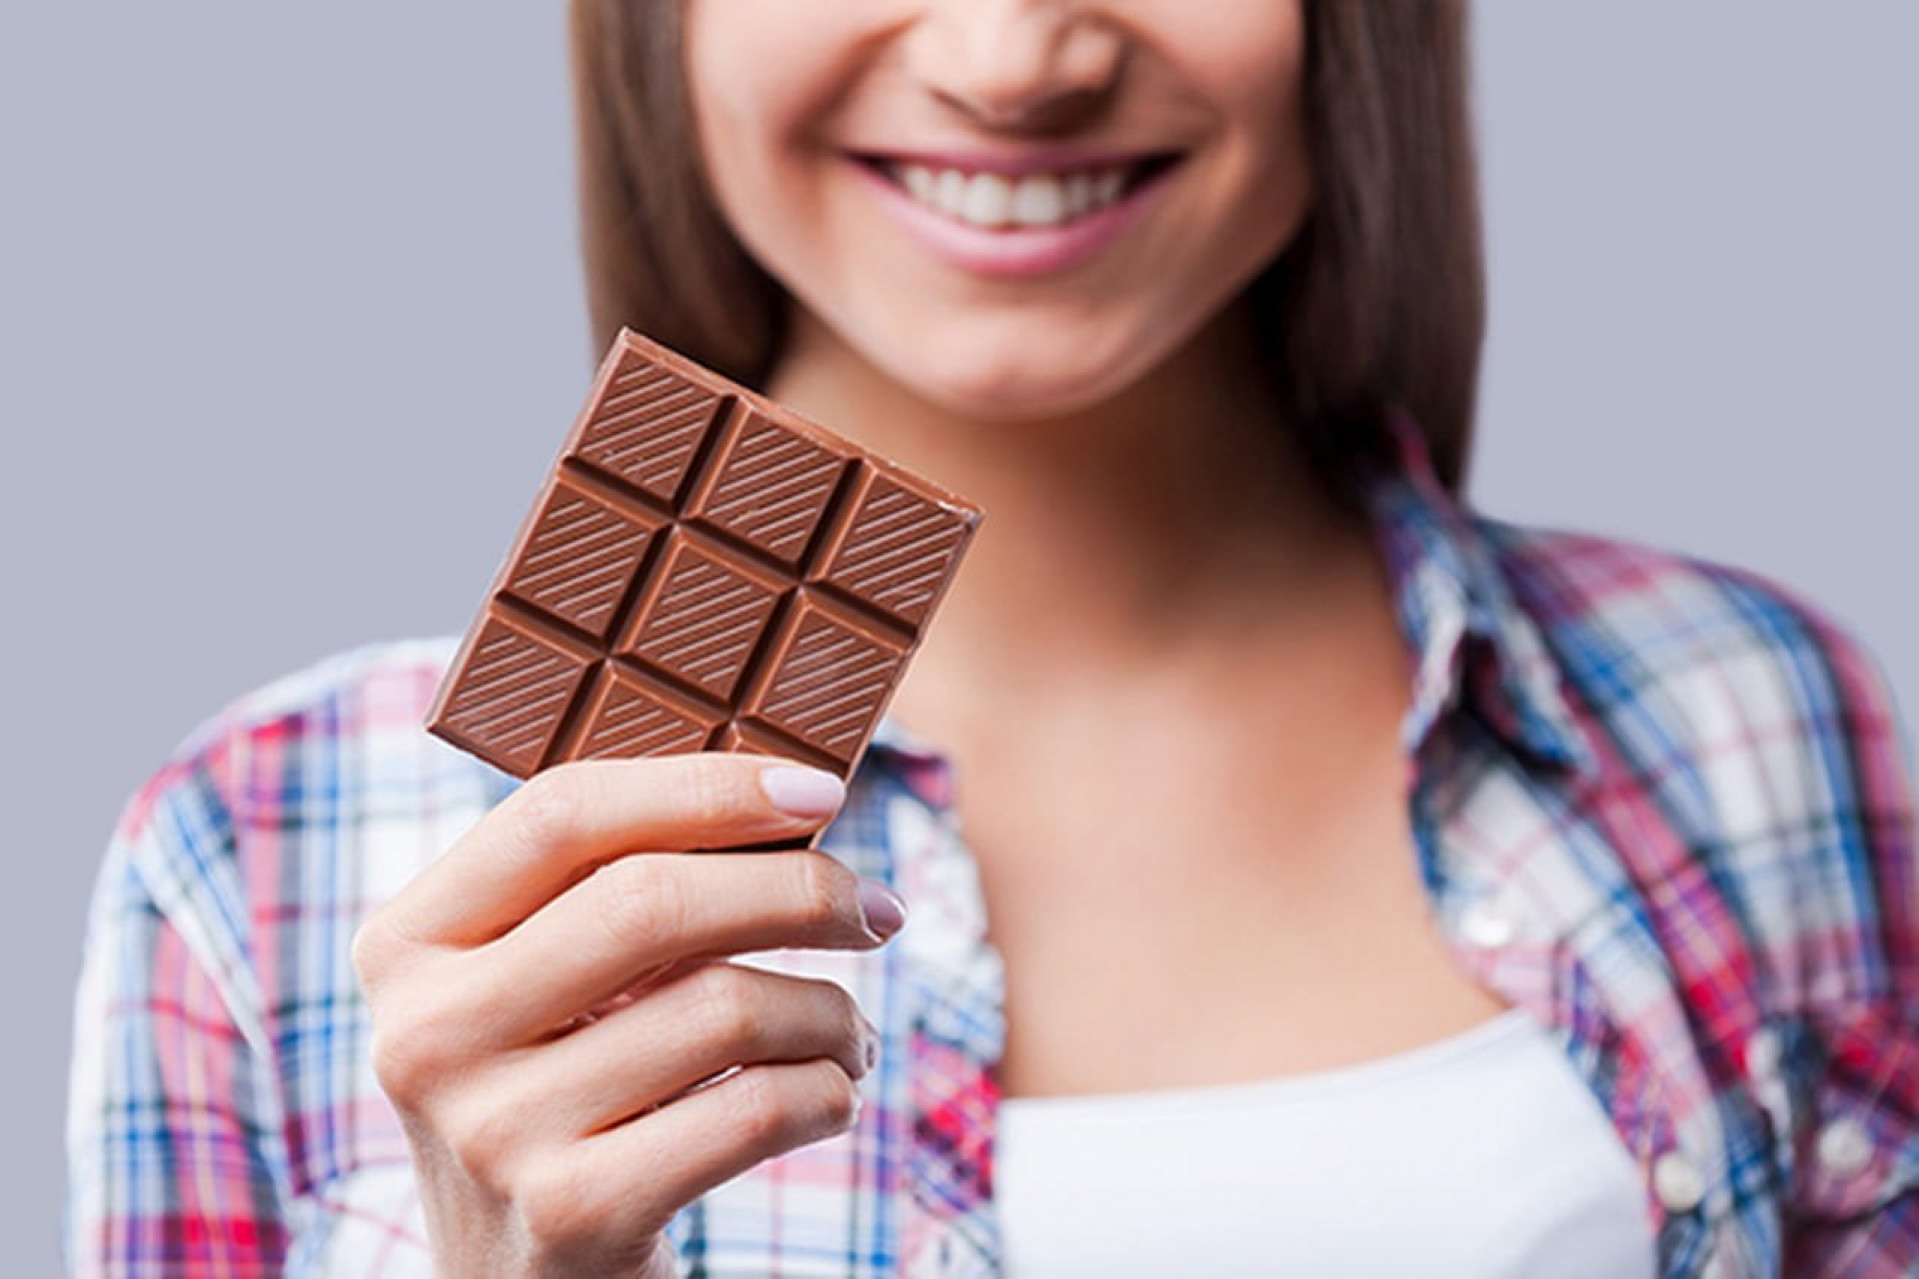 Видео с шоколадкой. Необычный шоколад. Плитка шоколада в руке. Шоколадка в руке. Шоколадка в руке девушки.